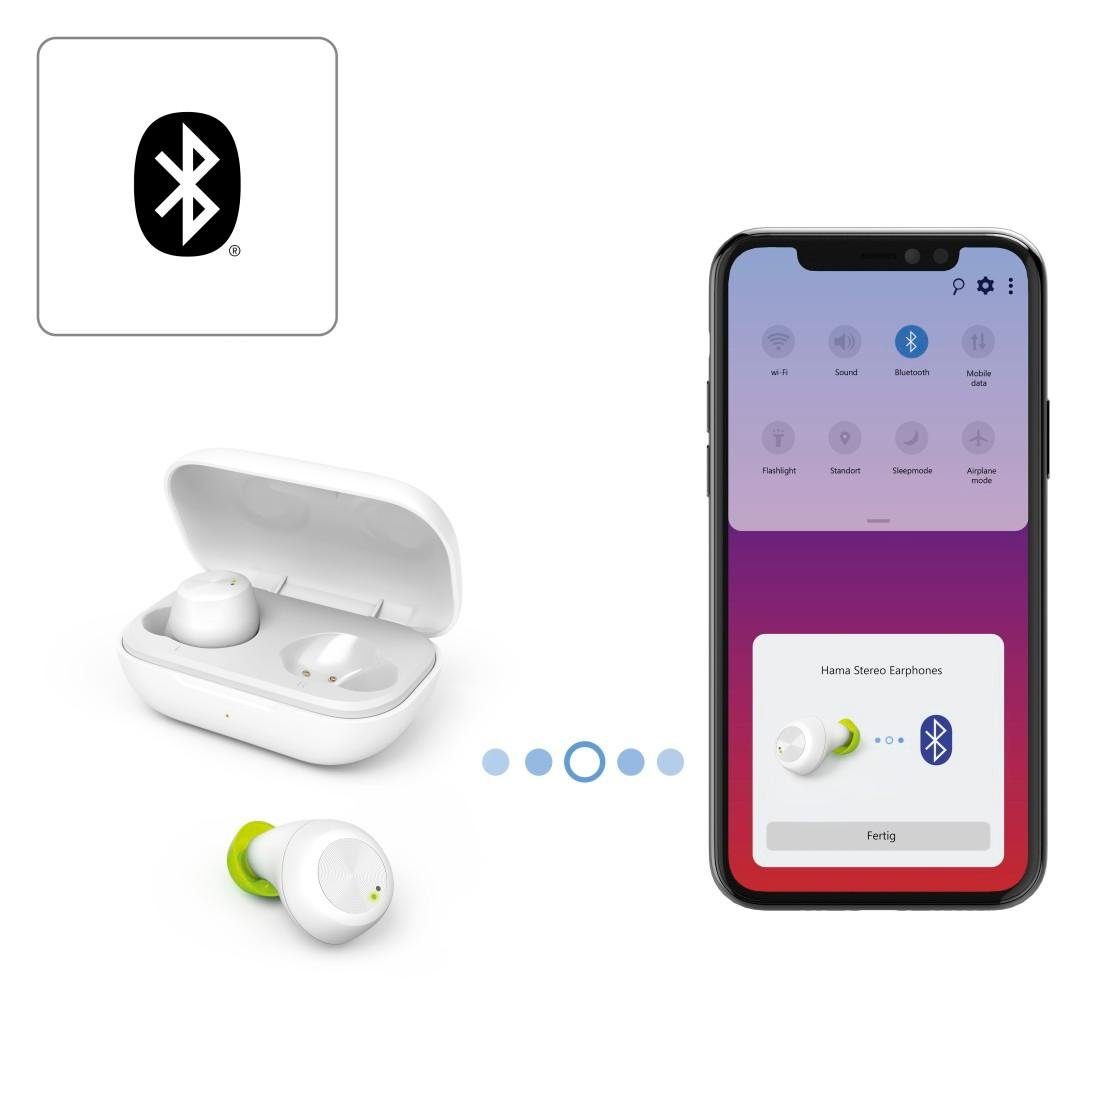 AVRCP weiß Siri, Bluetooth-Kopfhörer HFP, und Musik, Spritzwasserschutz, integrierte Wireless, Bluetooth, Bluetooth-Kopfhörer In-Ear Anrufe für Sport Assistant, Steuerung Now, True 4 Bluetooth, Hama kompatibel Google IPX (Freisprechfunktion, und Ladebox) Wireless Google A2DP Sprachsteuerung, mit Sprachsteuerung ultraleicht, True für Alltag, Siri,